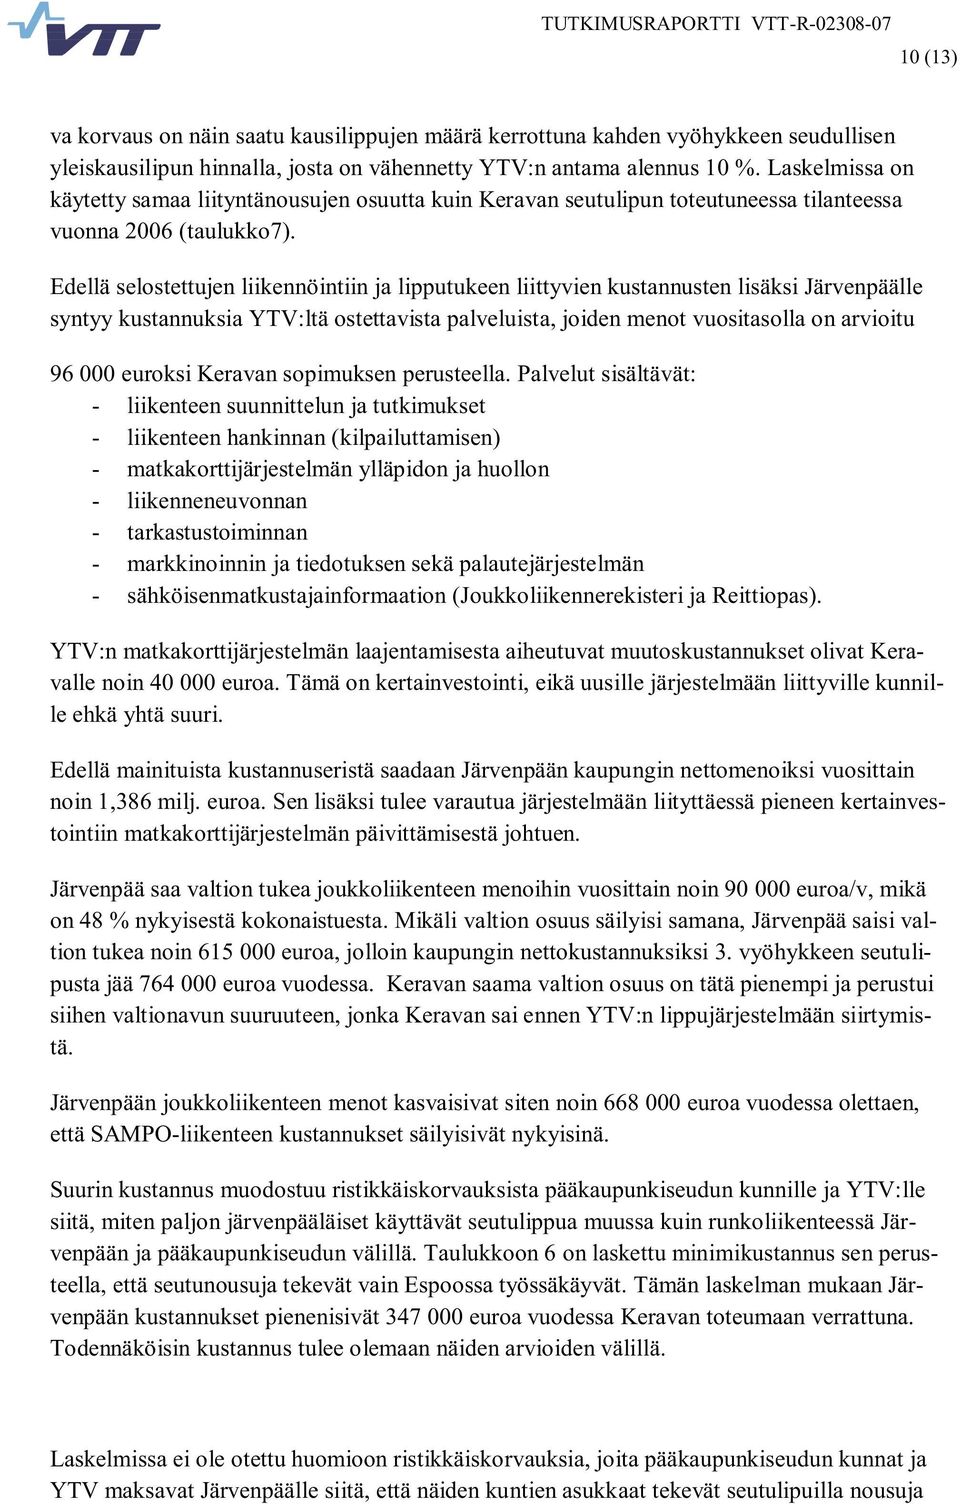 Edellä selostettujen liikennöintiin ja lipputukeen liittyvien kustannusten lisäksi Järvenpäälle syntyy kustannuksia YTV:ltä ostettavista palveluista, joiden menot vuositasolla on arvioitu 96 000